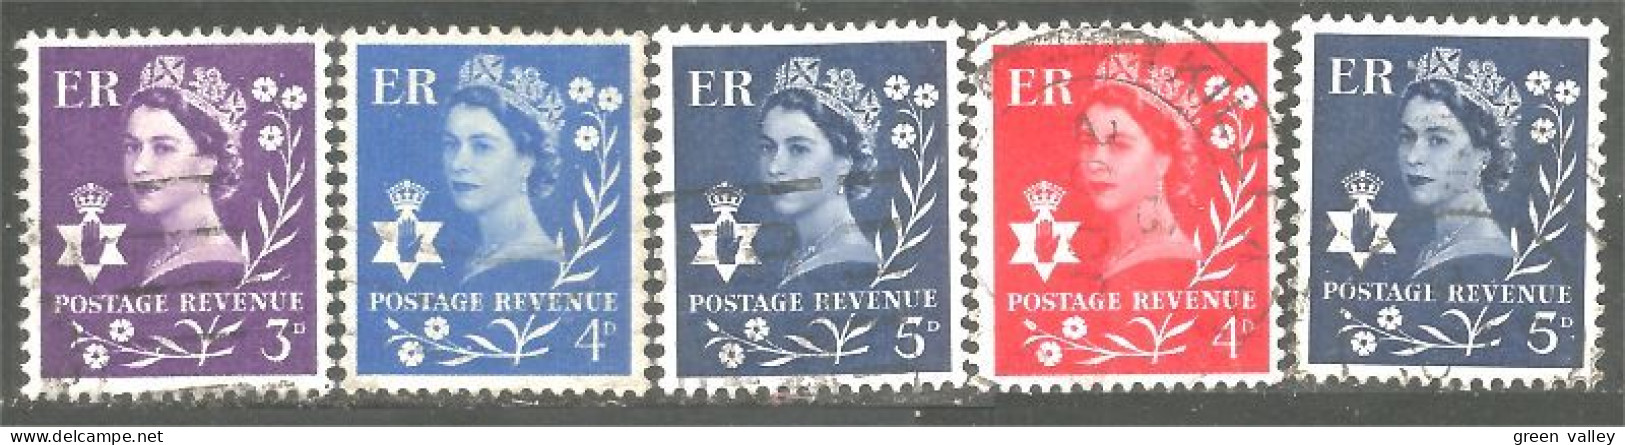 414 G-B Regionals Northern Ireland 5 Stamps Queen Elizabeth (REG-27) - Irlanda Del Norte